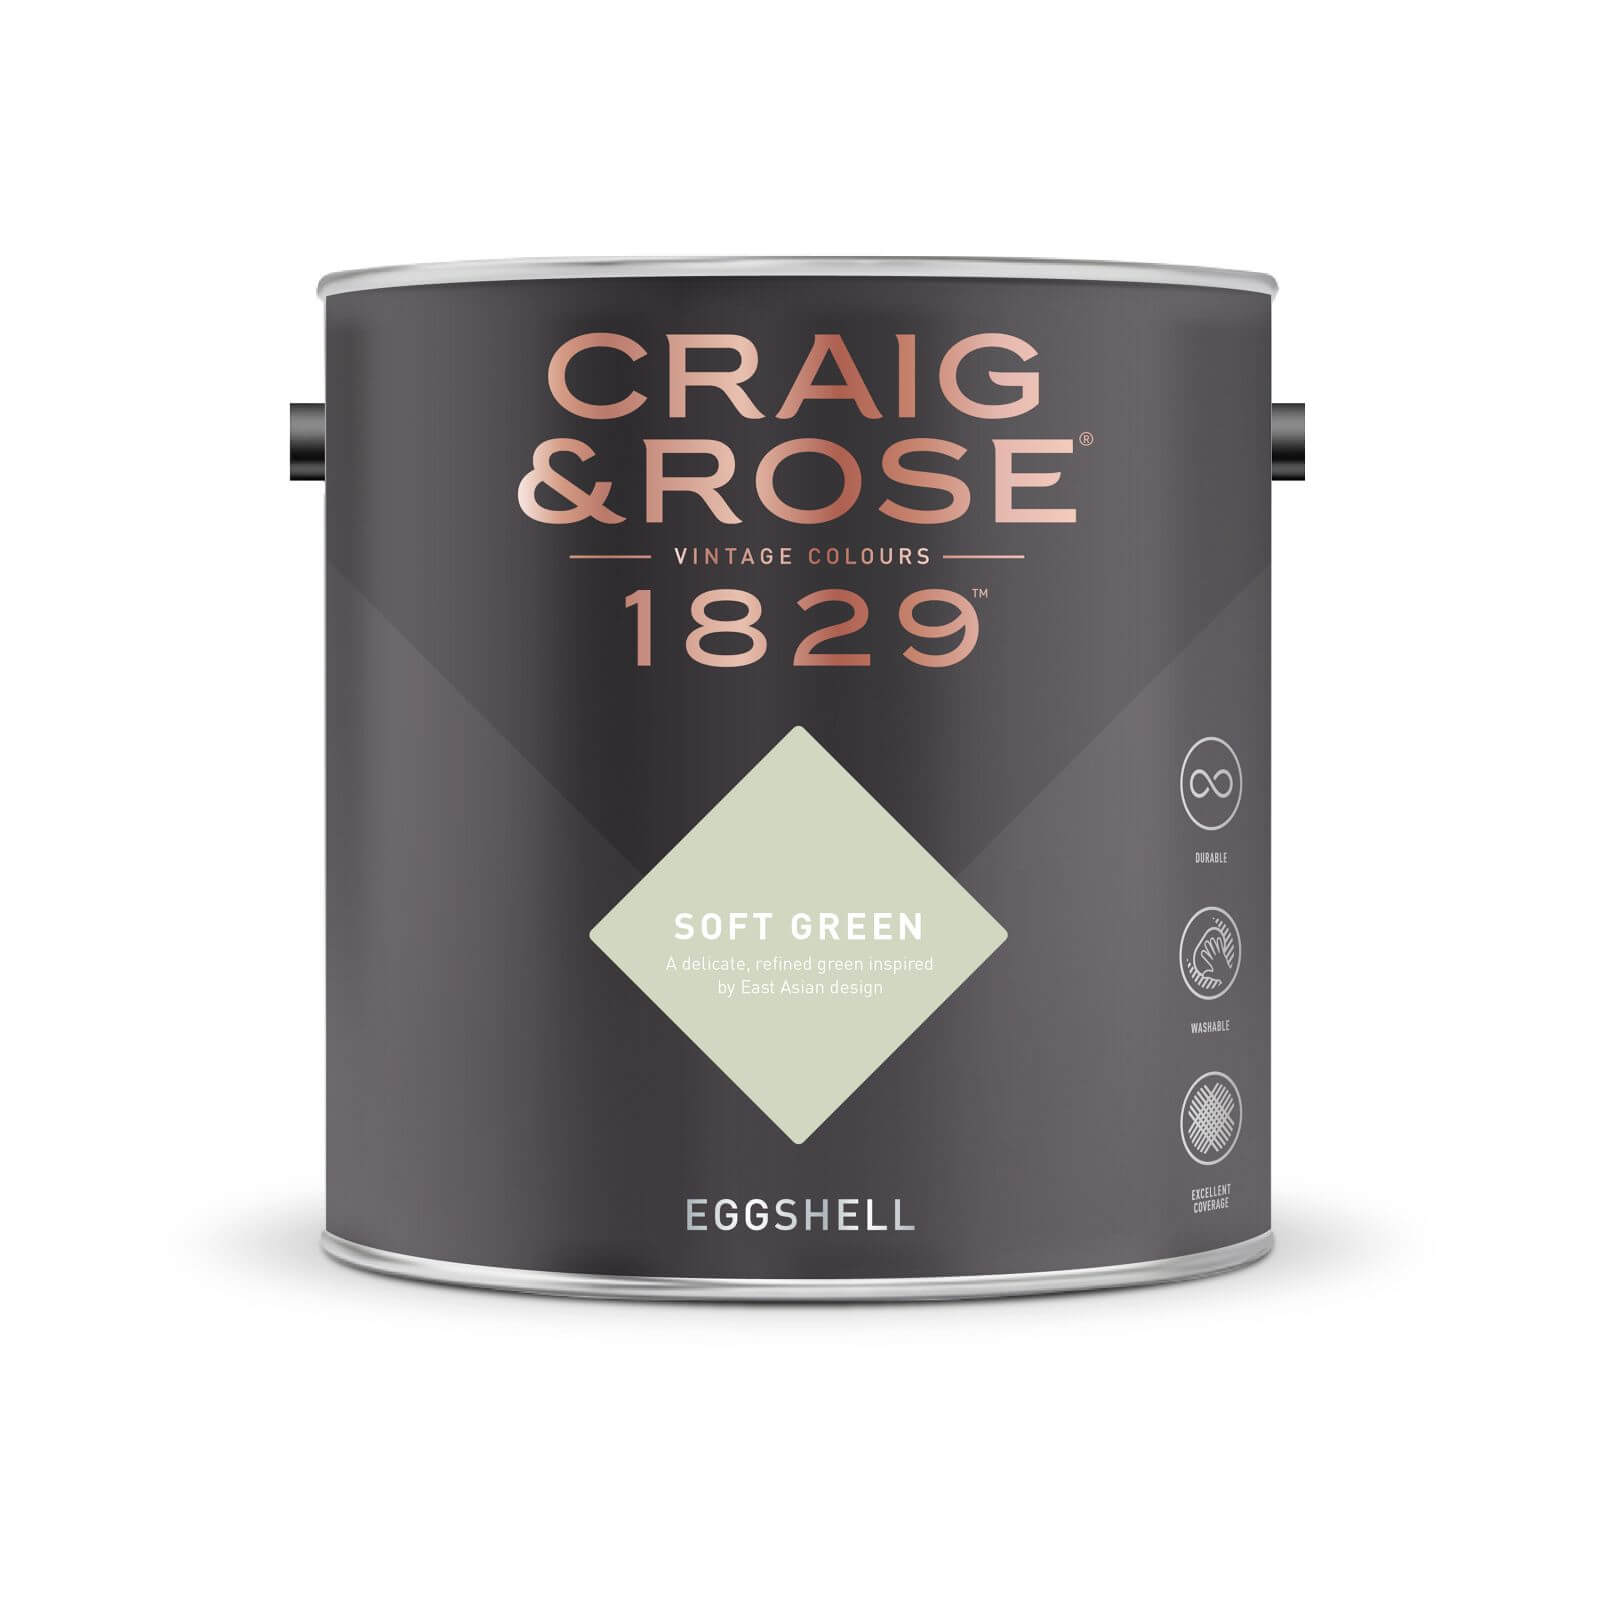 Craig & Rose 1829 Eggshell Paint Soft Green - 2.5L